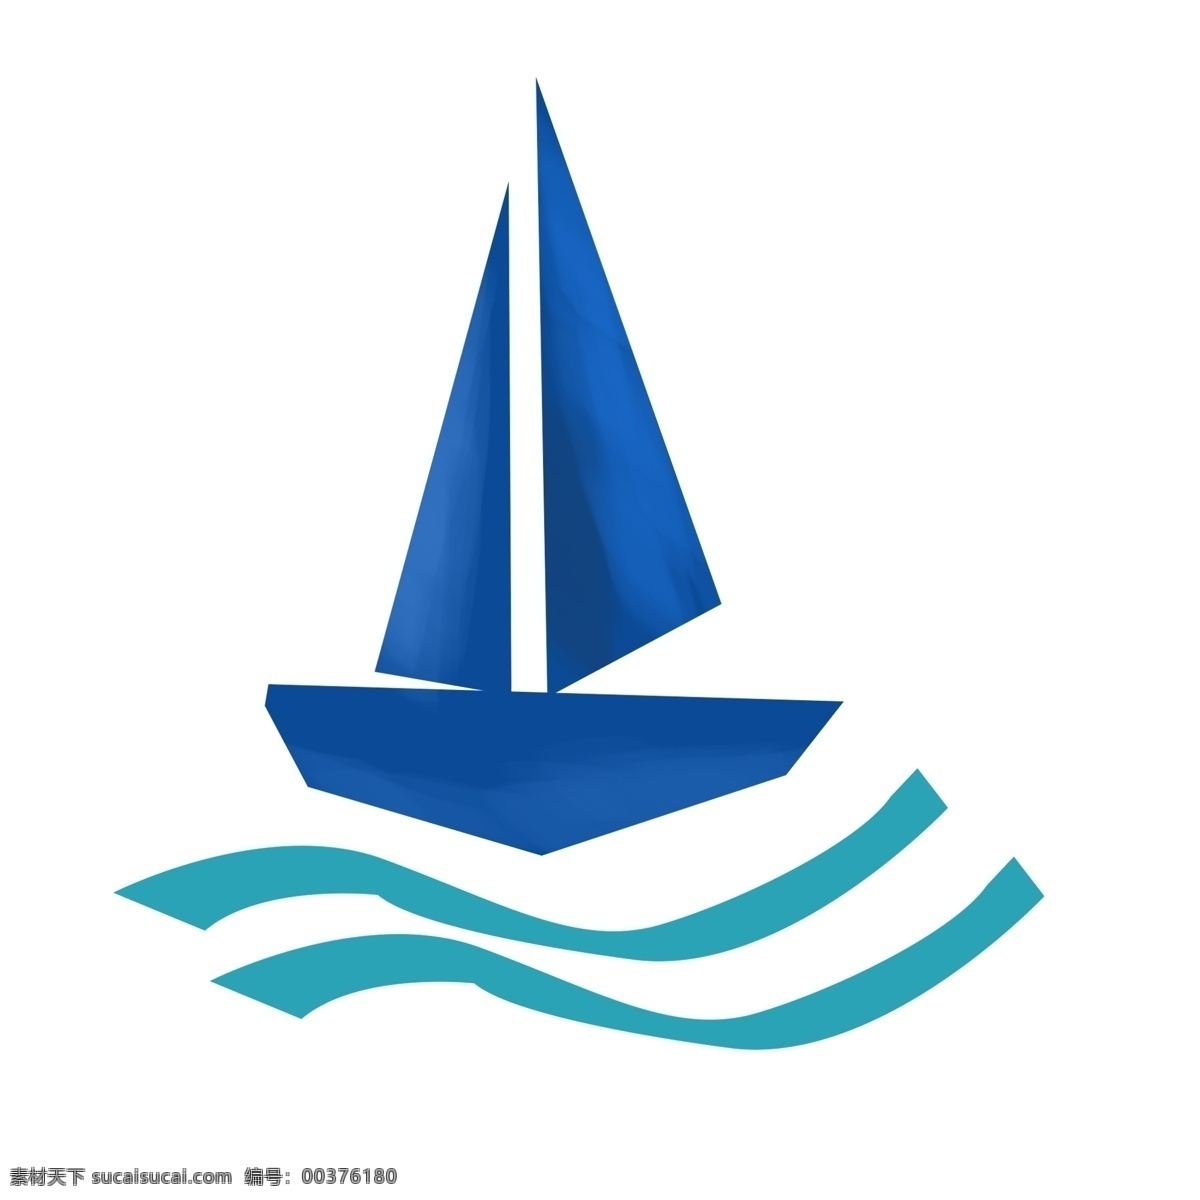 可爱 卡通 帆船 图标 渐变色 一帆风顺 祝福 碧海 蓝天 乘船 船帆 水上设施 交通工具